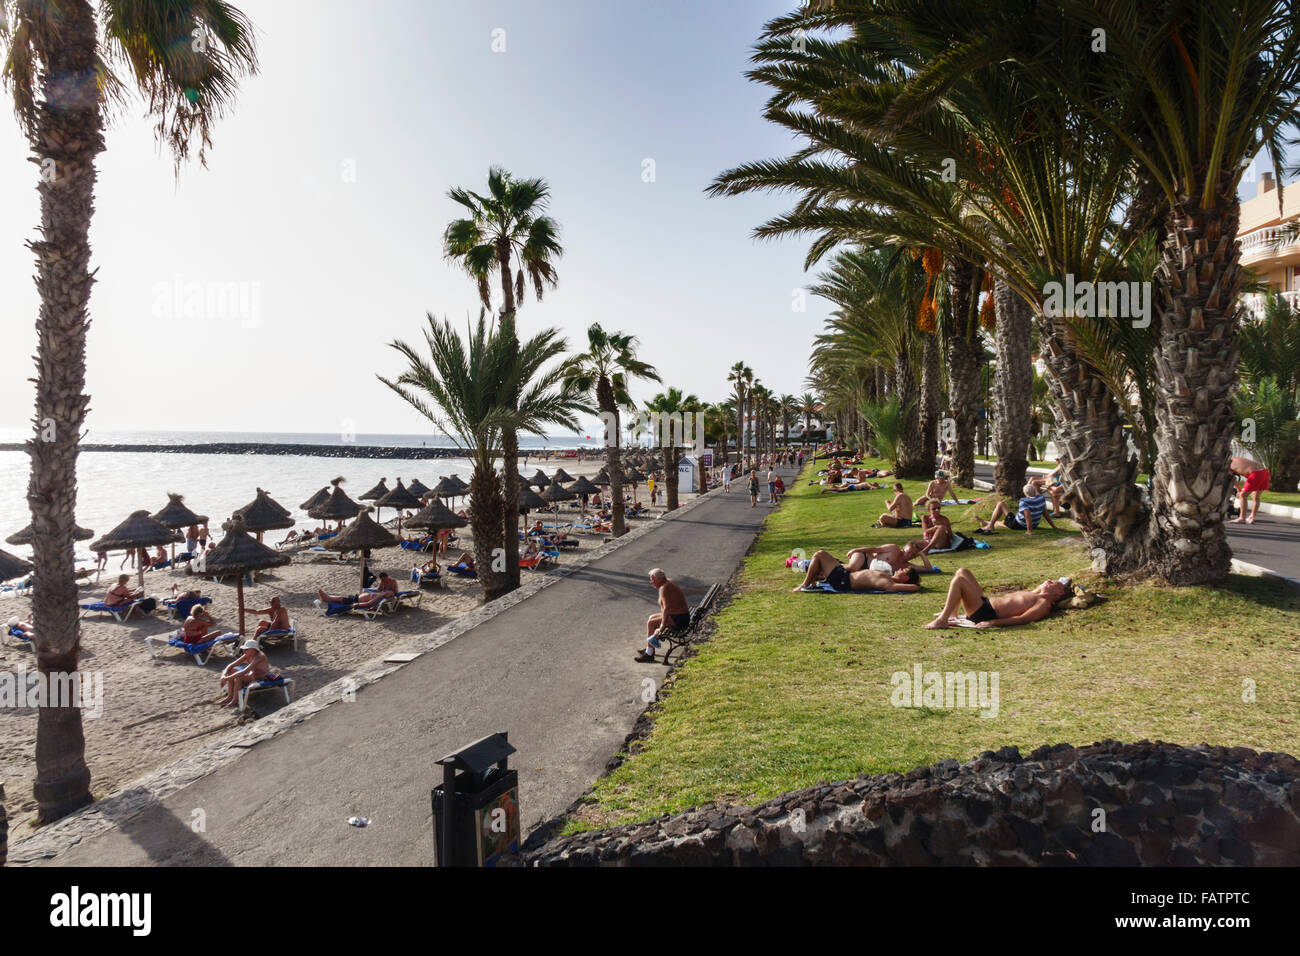 Tenerife, Canary Islands - Playa las Americas. Las Vistas beach. Stock Photo